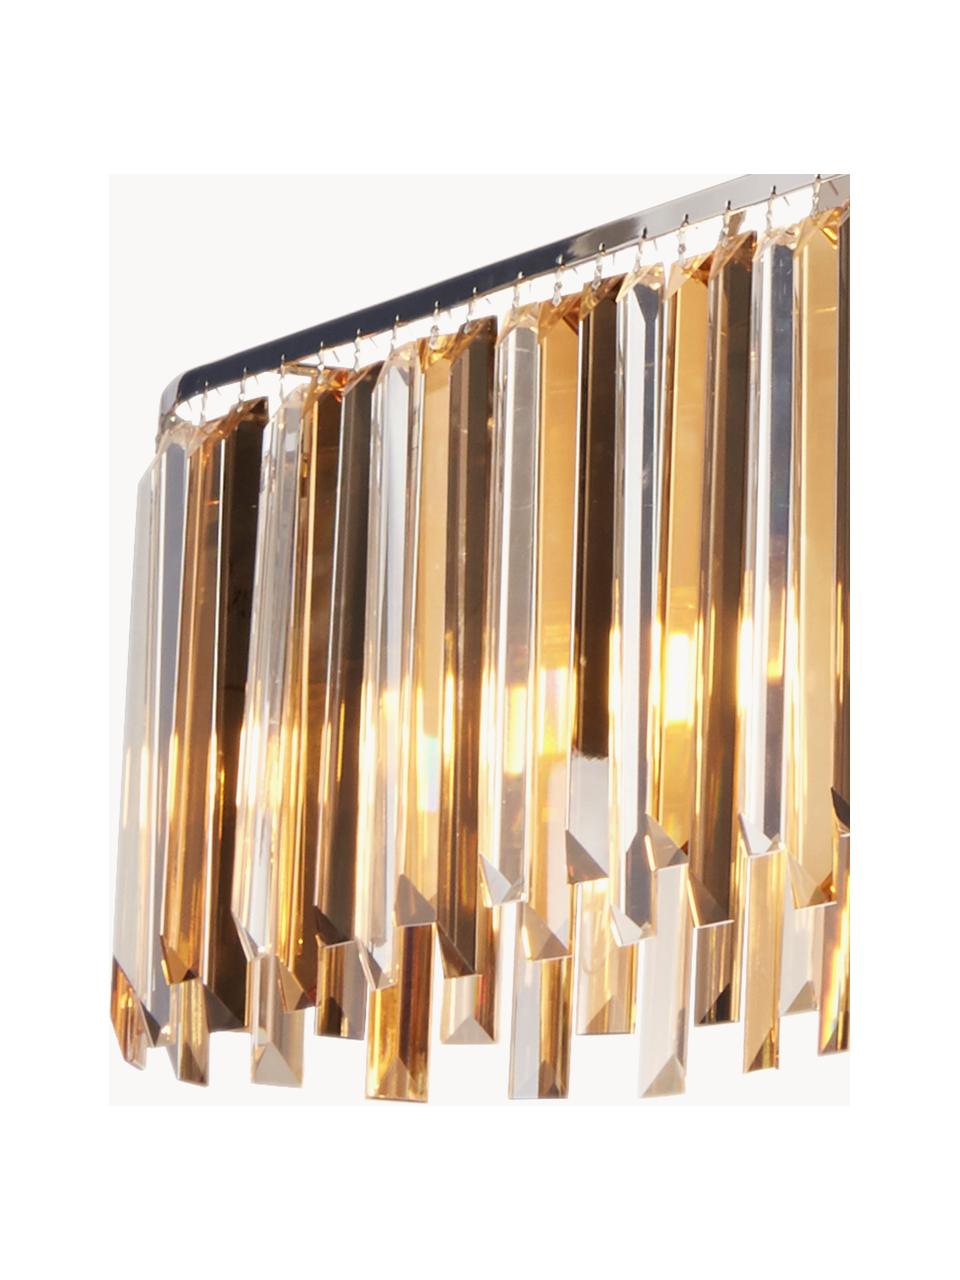 Grosse Design Pendelleuchte Clarissa, Lampenschirm: Glas, Baldachin: Stahl, beschichtet, Silber- und Goldfarben, B 100 x H 25 cm